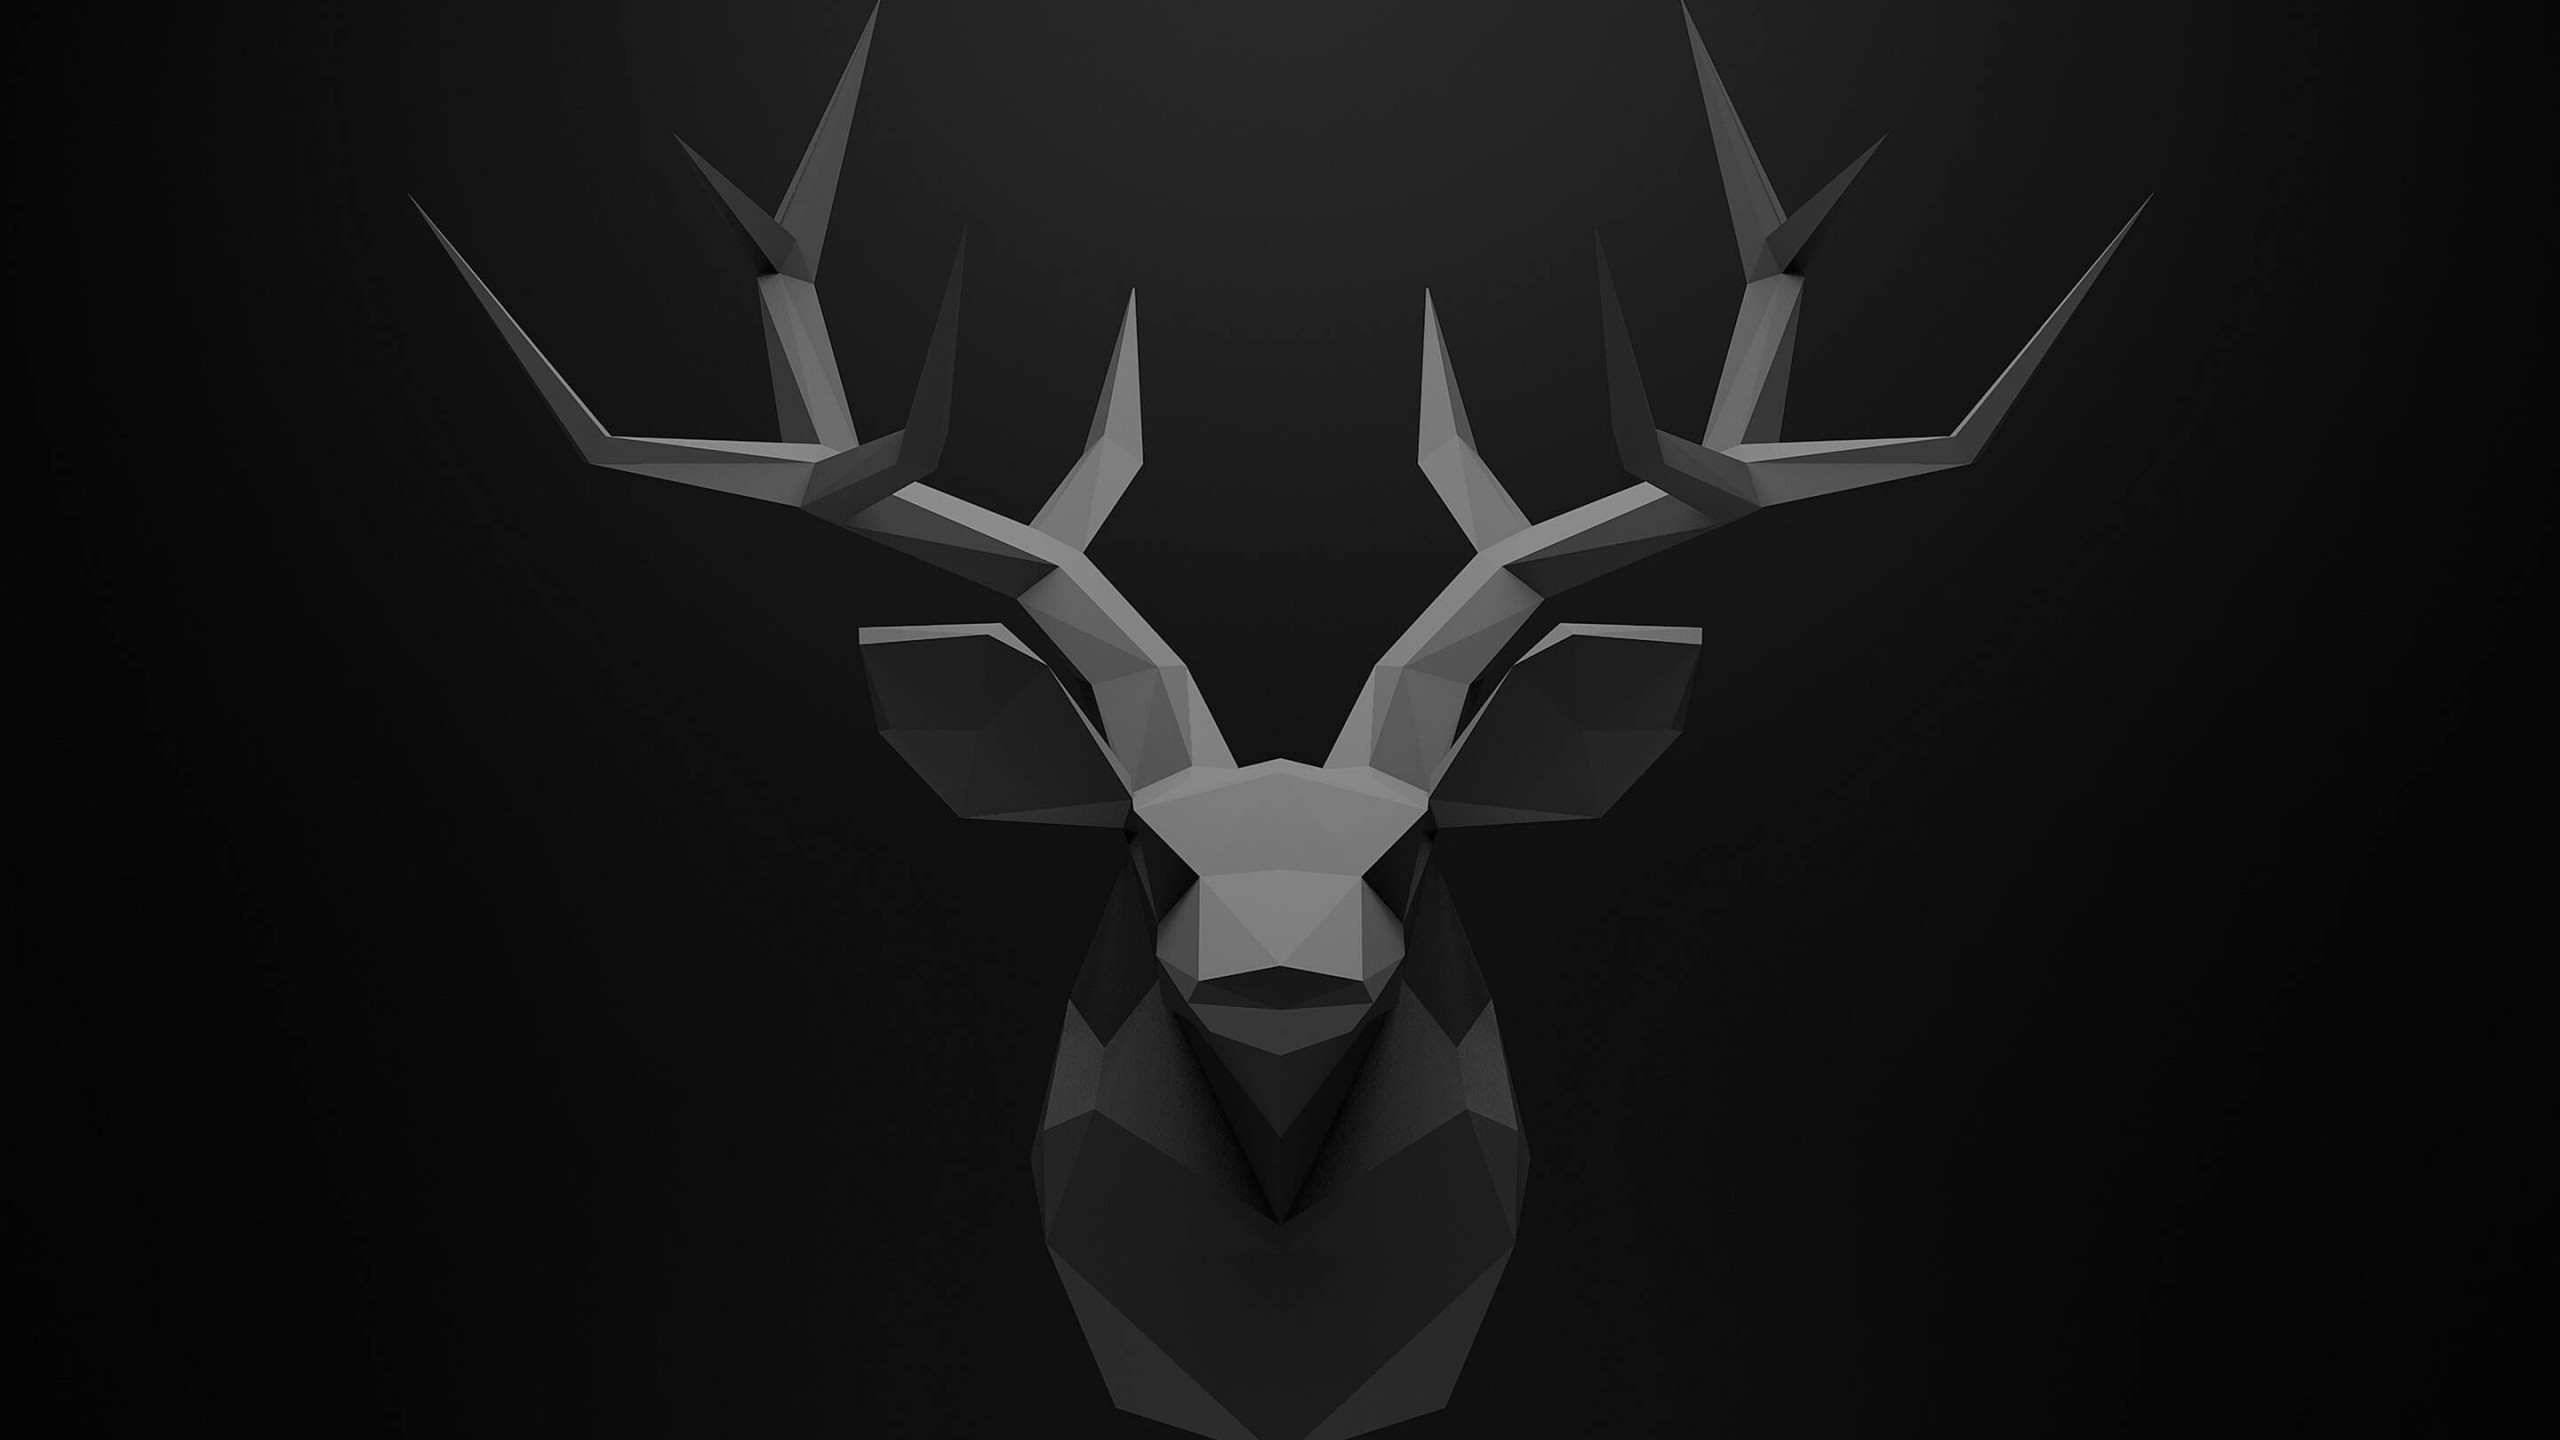 Low Poly Deer Head Wallpaper for Desktop 2560x1440